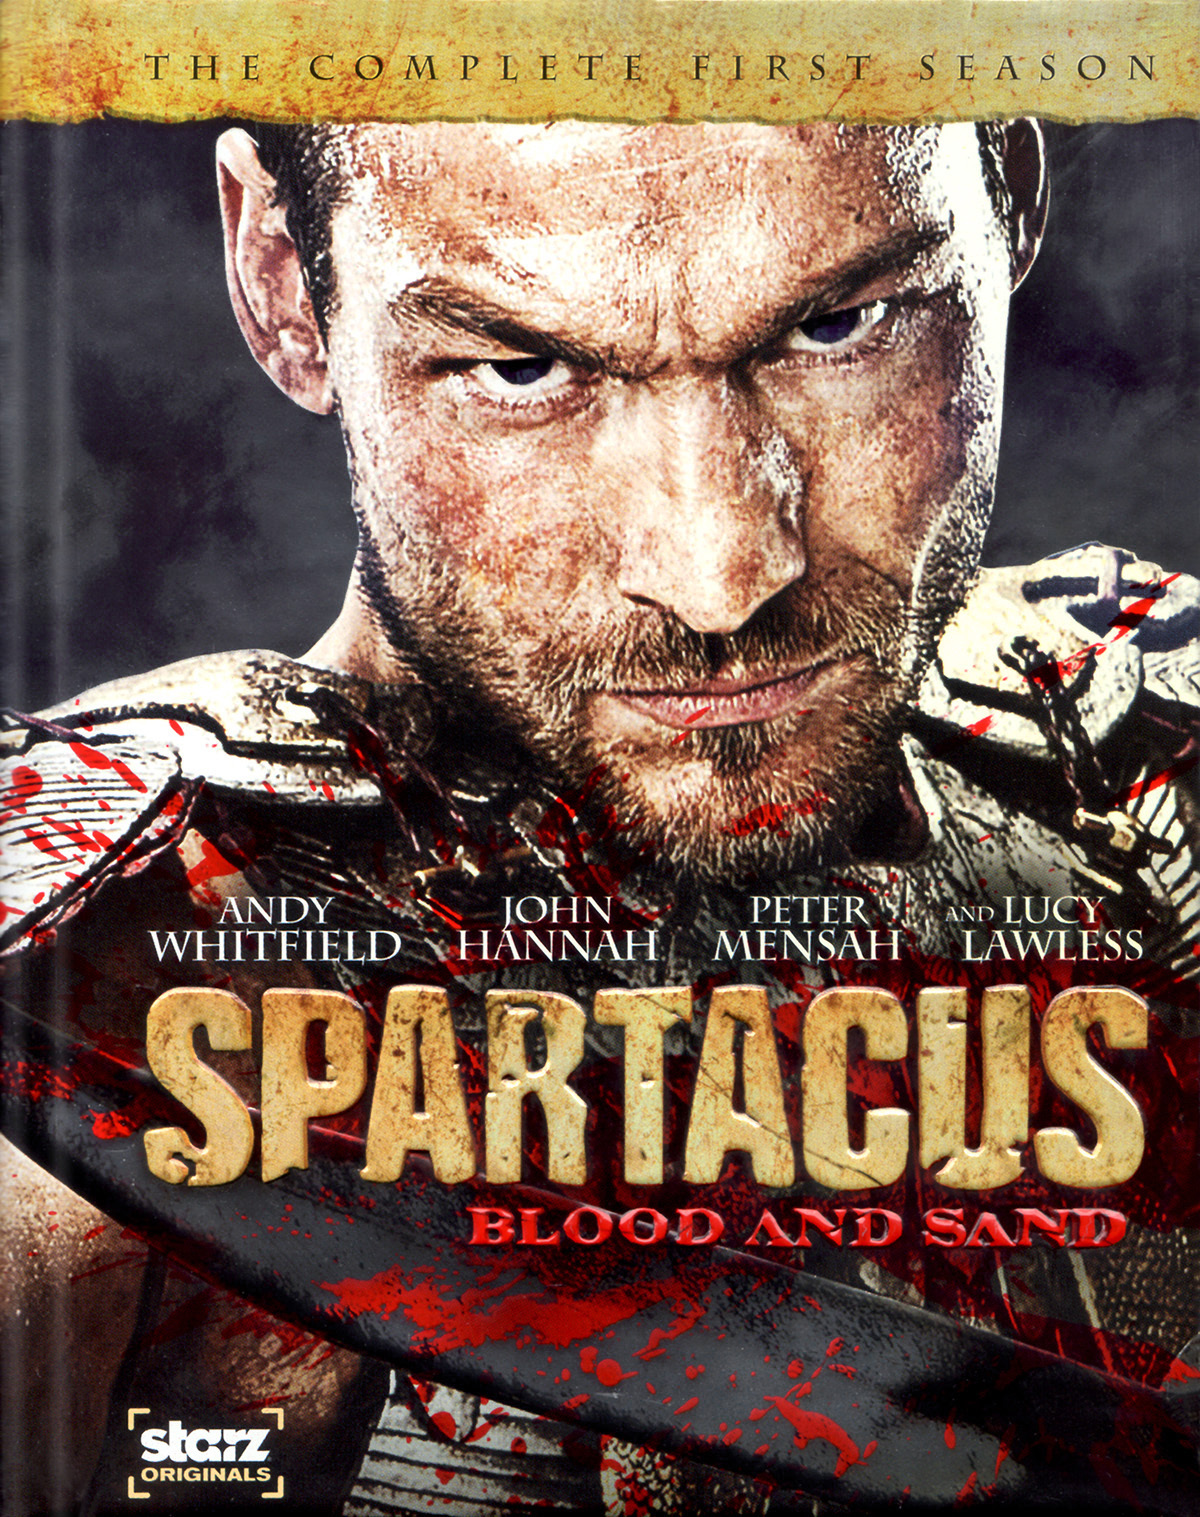 spartacus season 1 torrent